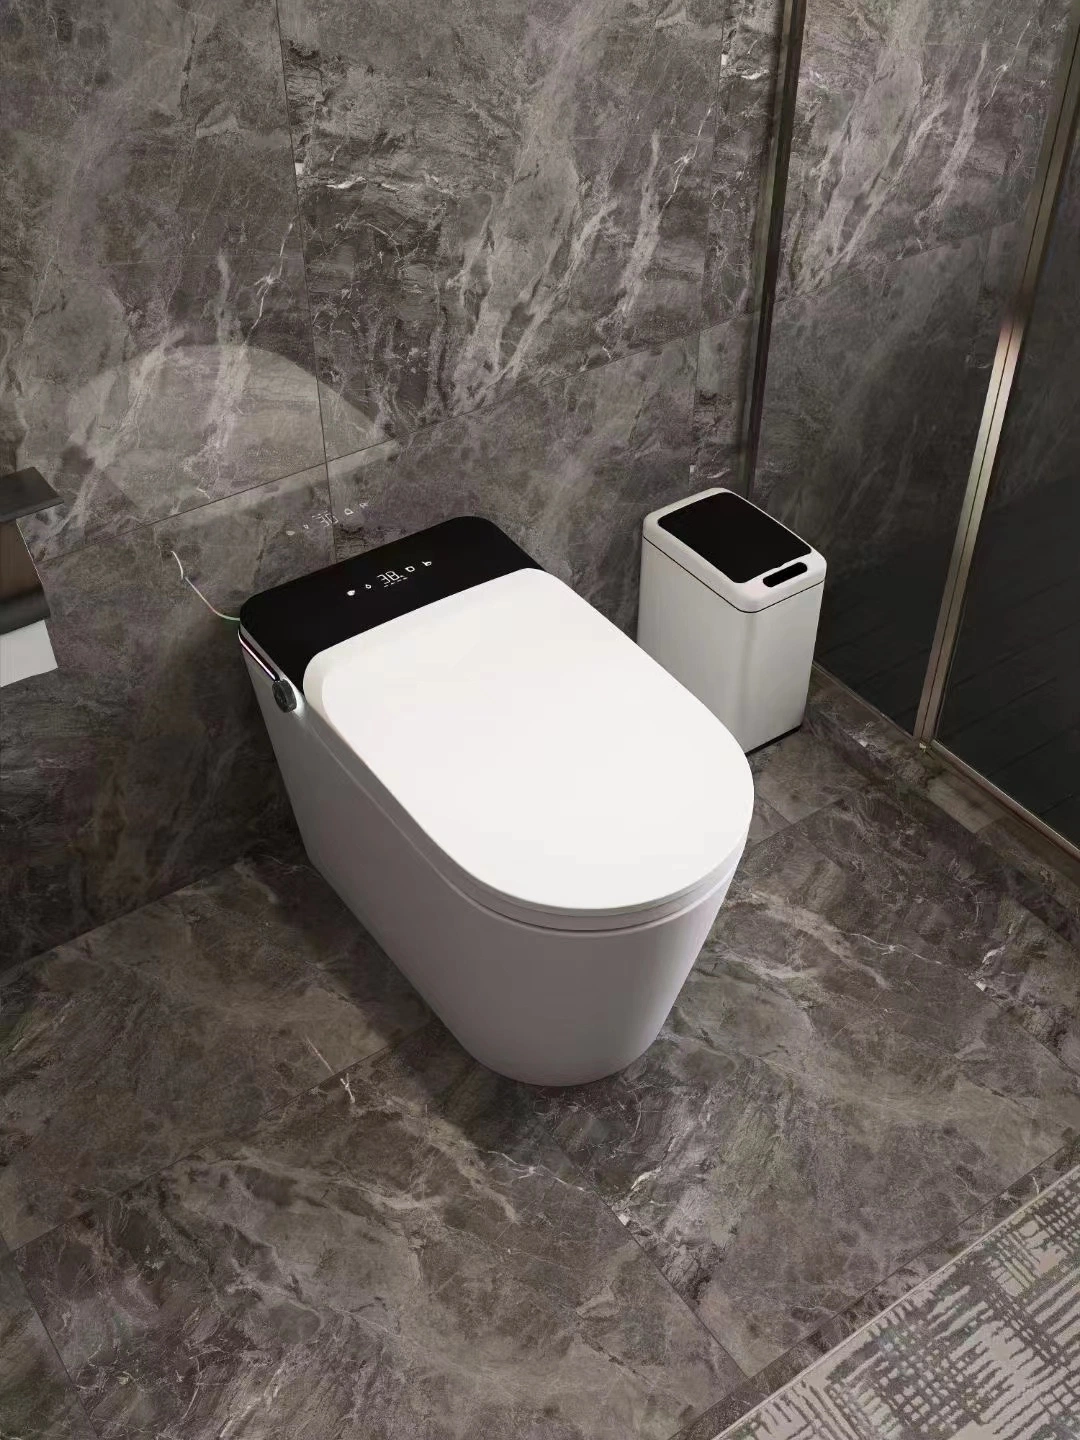 Elektrisch Einteilig Sensor Toiletten Wc Bidet Sanitärkeramik Wc.